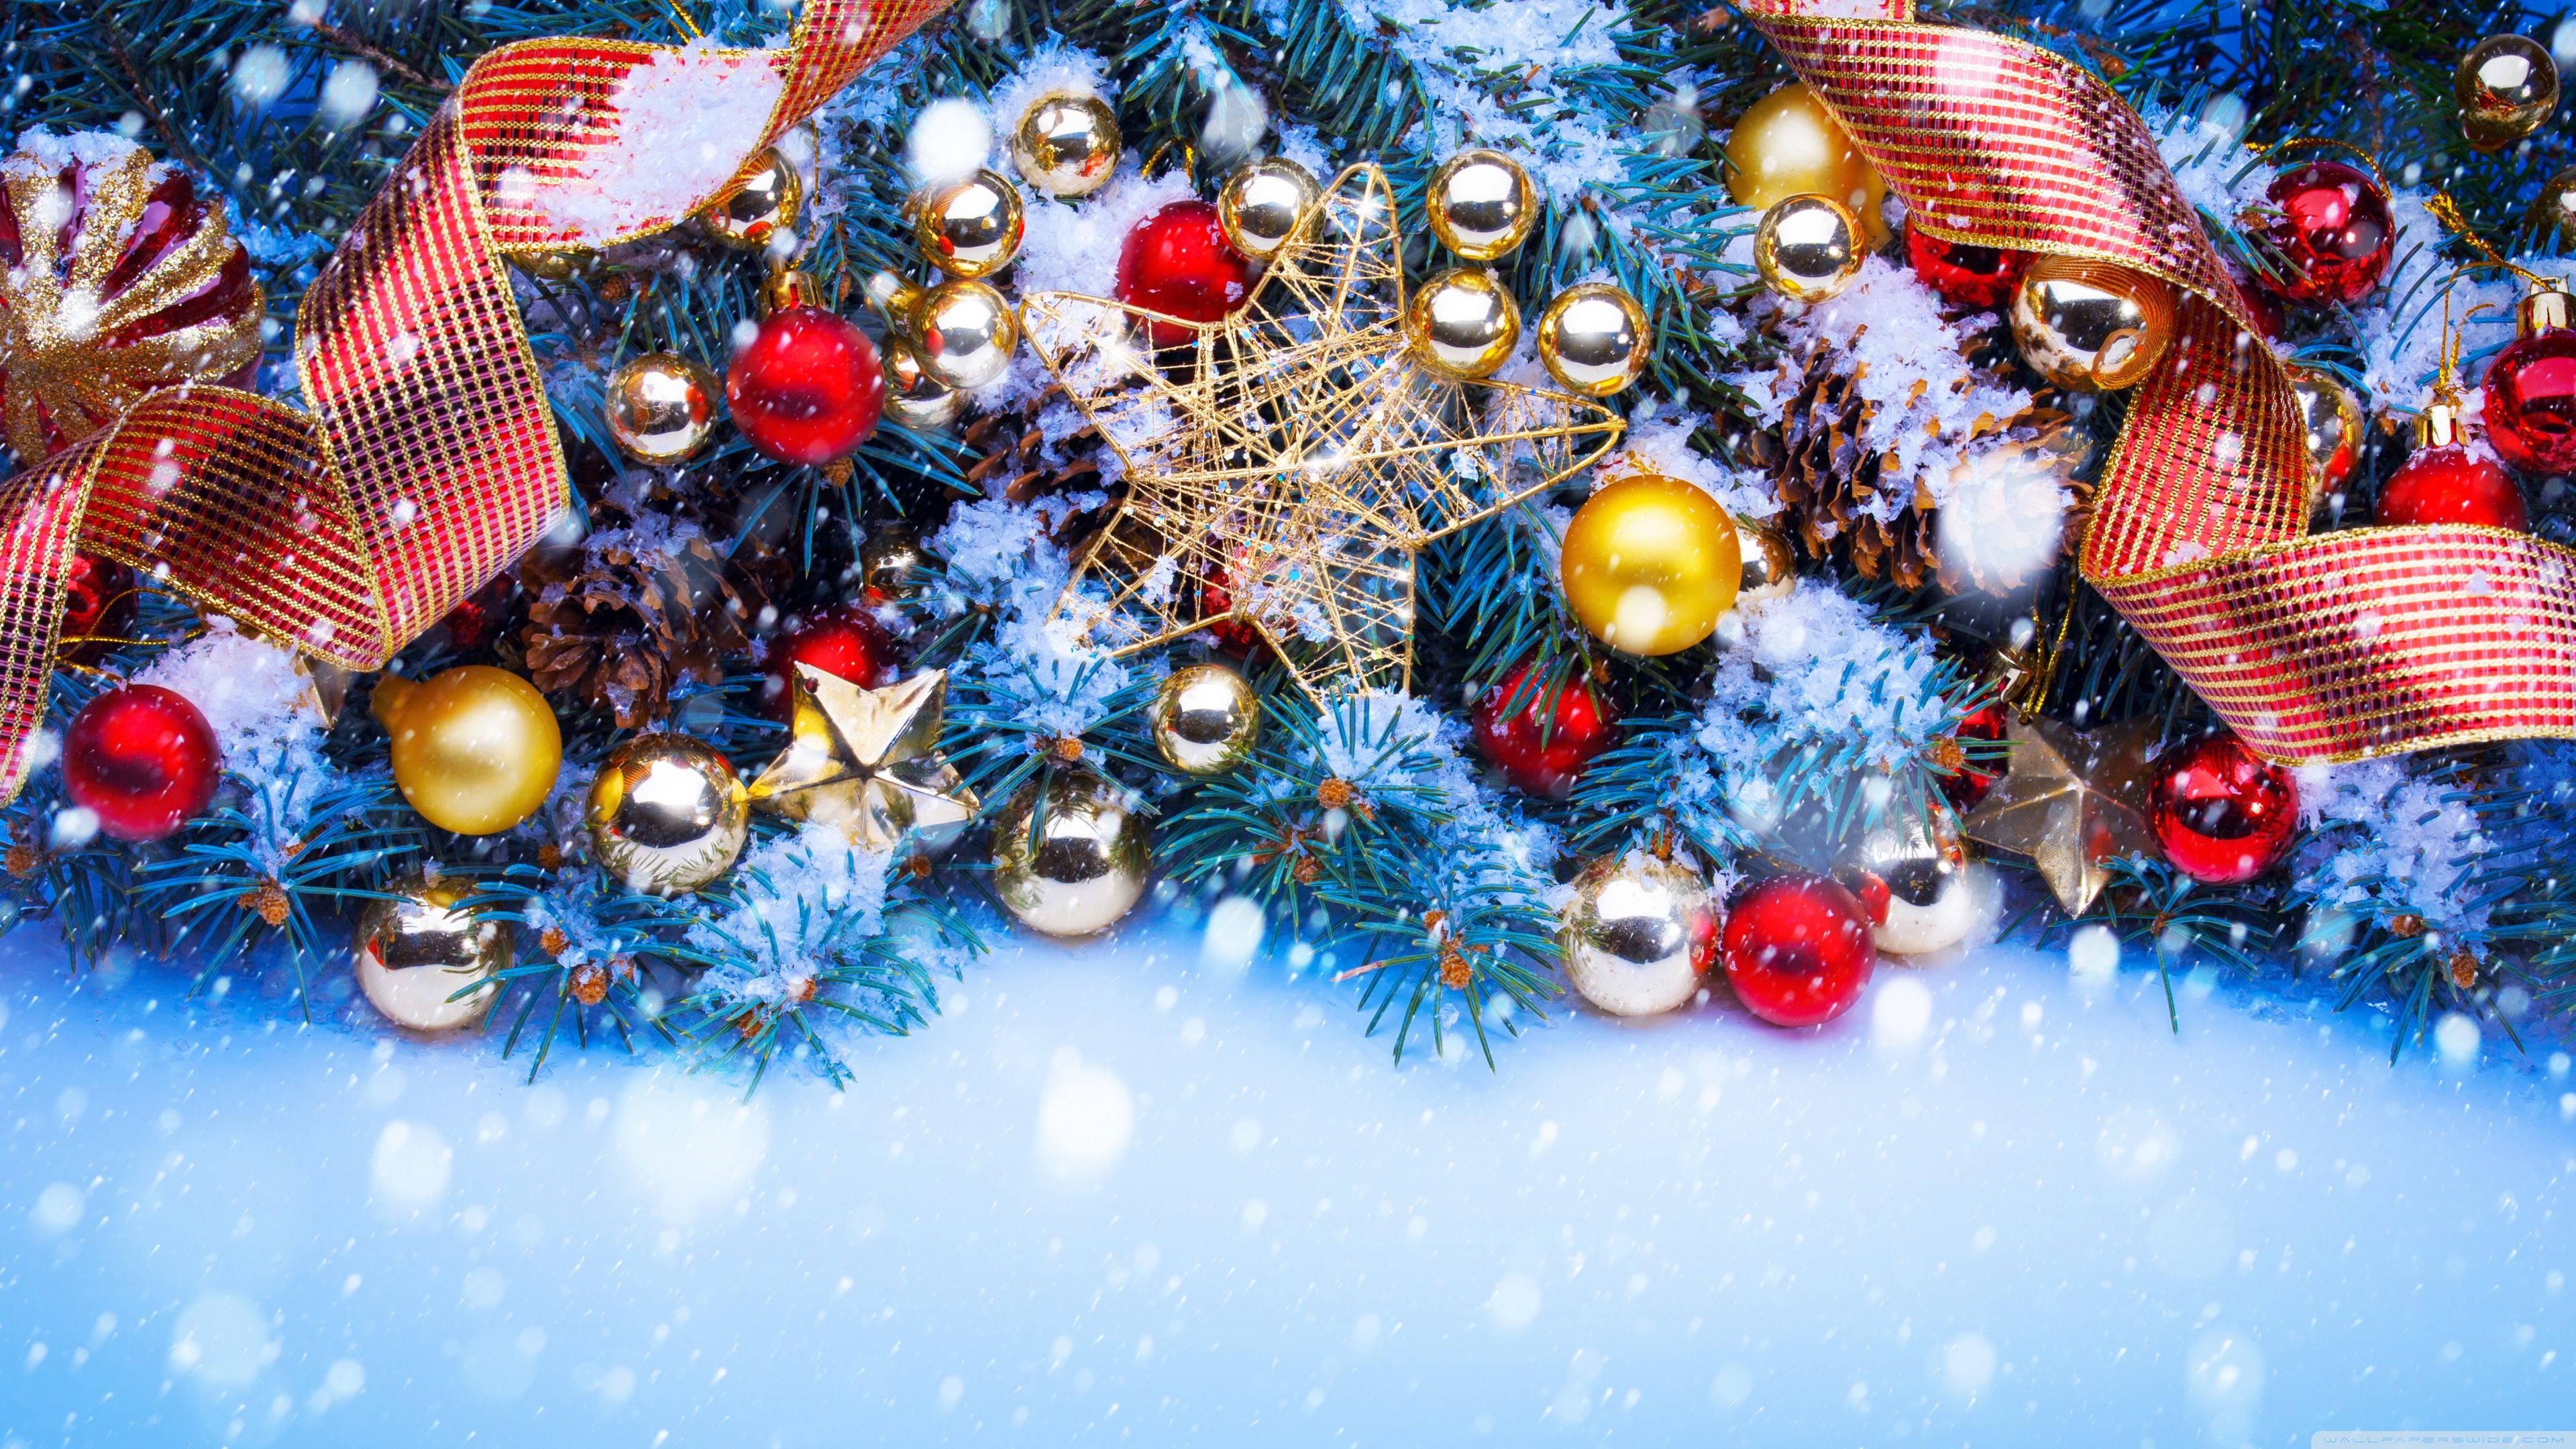 Hãy tải miễn phí wallpaper Giáng sinh 3840 X 2160 tuyệt đẹp để trang trí nền máy tính và mang đến không khí Noel cho ngôi nhà của bạn. Với chất lượng hình ảnh sắc nét và độ phân giải cao, bạn sẽ cảm thấy như đang chiêm ngưỡng những cây thông rực rỡ ánh sáng vào buổi tối Giáng sinh.